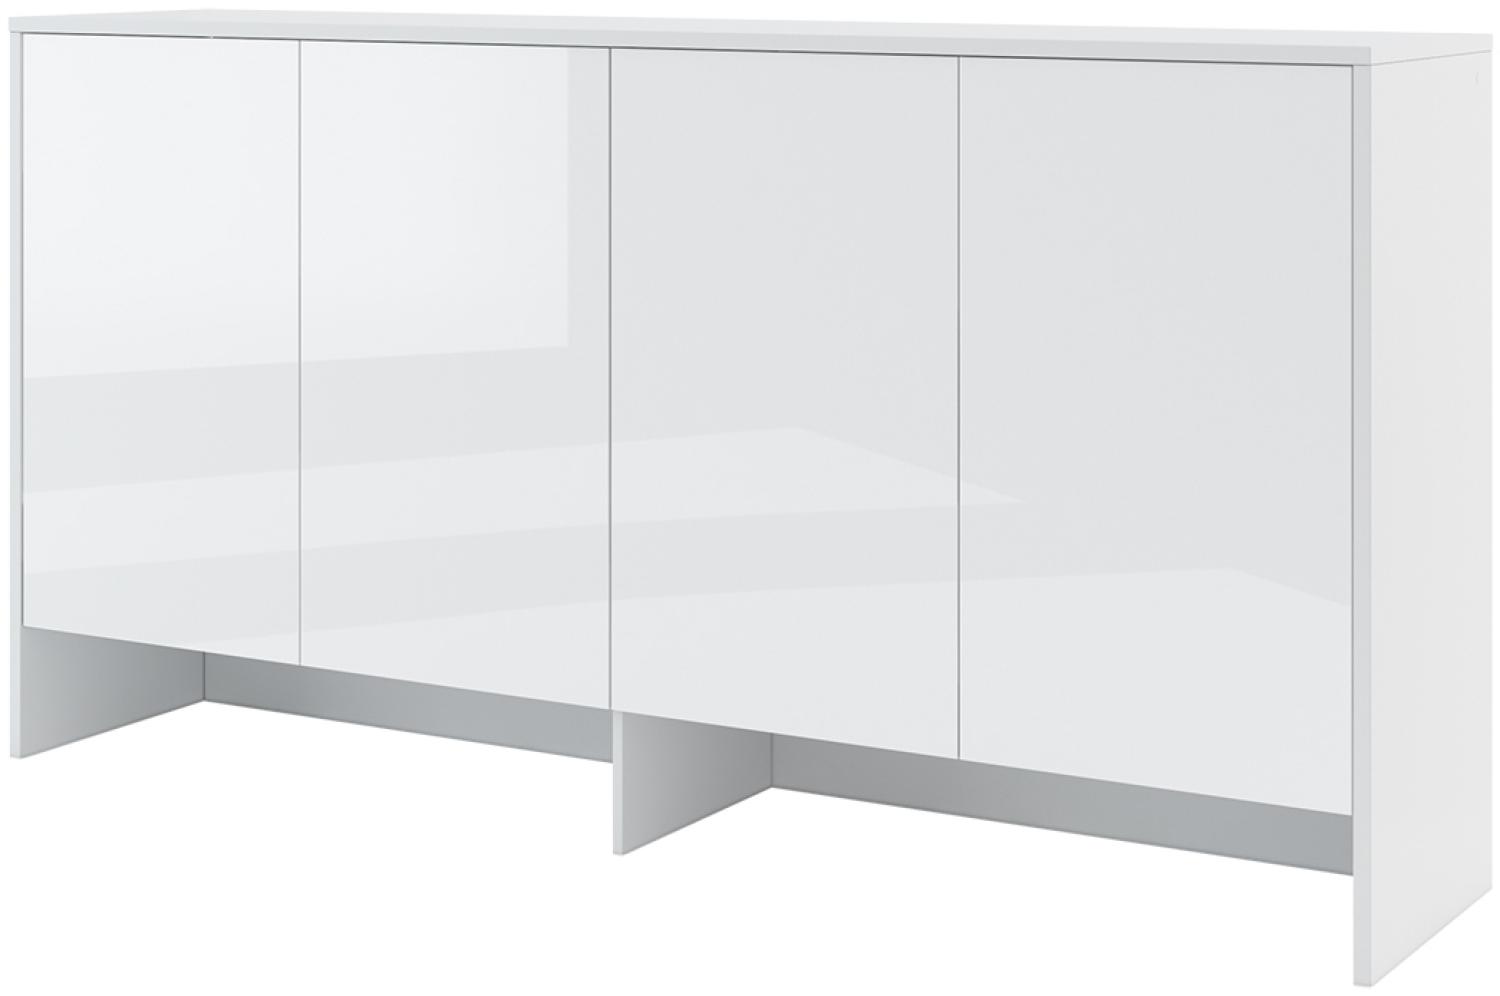 MEBLINI Hängeschrank für Horizontal Schrankbett Bed Concept - Wandschrank mit Ablagen und Fächern - Wandregal - BC-11 für 90x200 Horizontal - Weiß/Weiß Hochglanz Bild 1